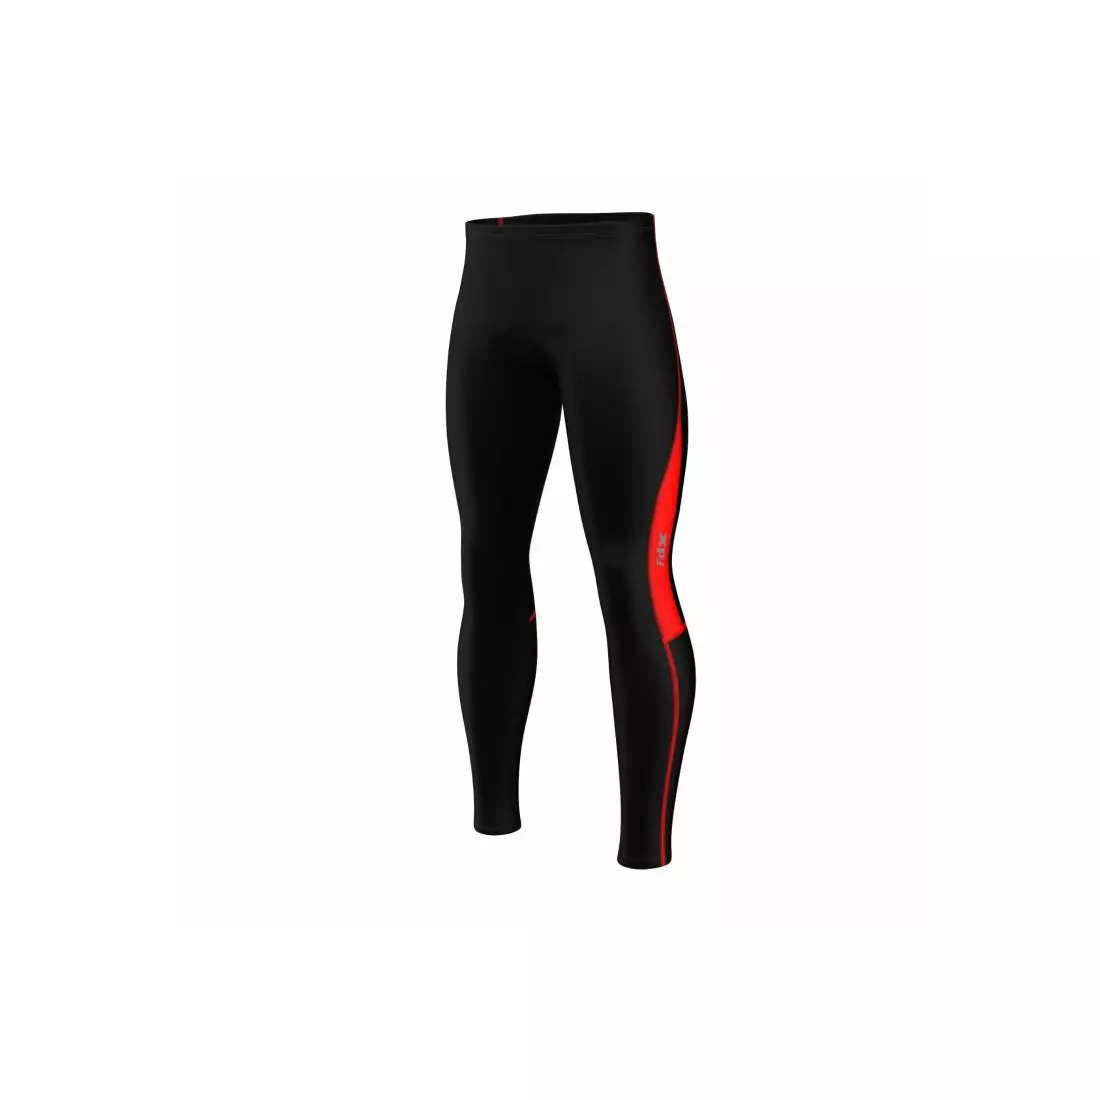 FDX 1810 pánské zateplené cyklistické kalhoty bez šle, černá a červená